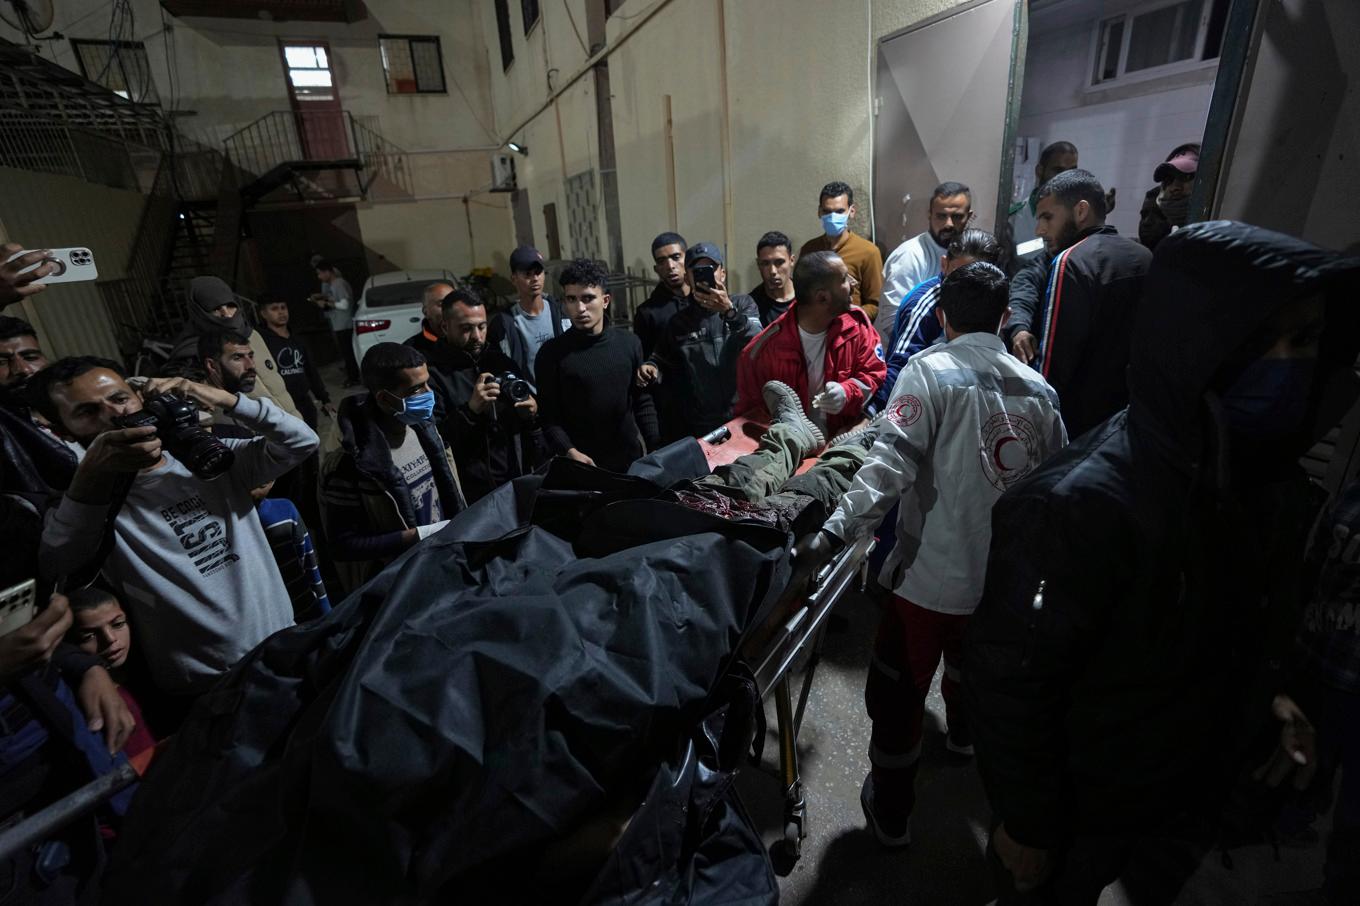 Offer för flygräden förs in på al-Aqsasjukhuset i Dayr al-Balah i Gazaremsan. Foto: Abd al-Karim Hana/AP/TT